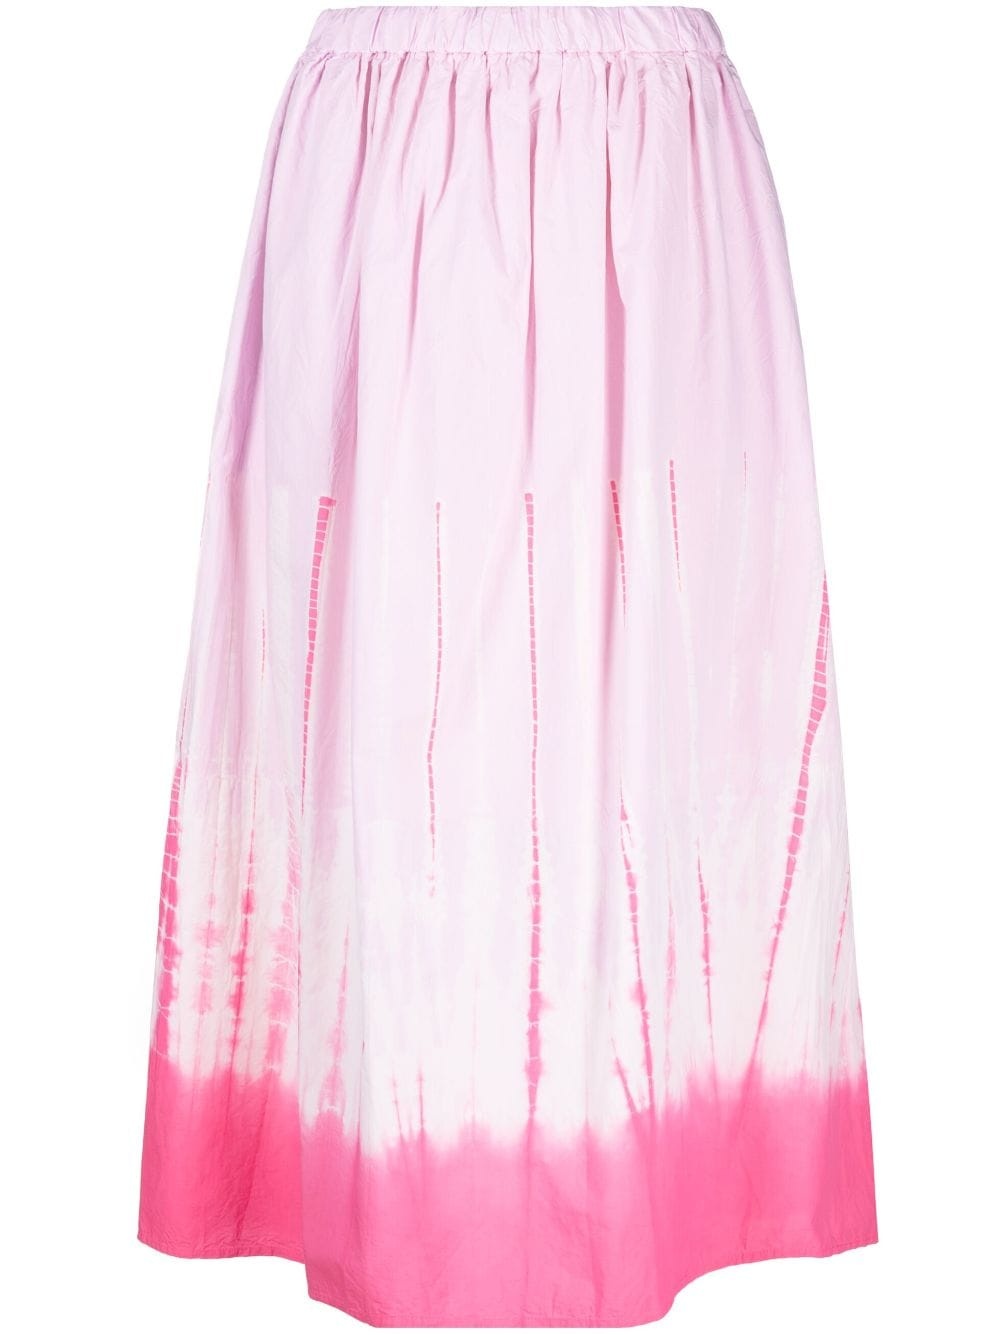 Shibori cotton skirt - 1